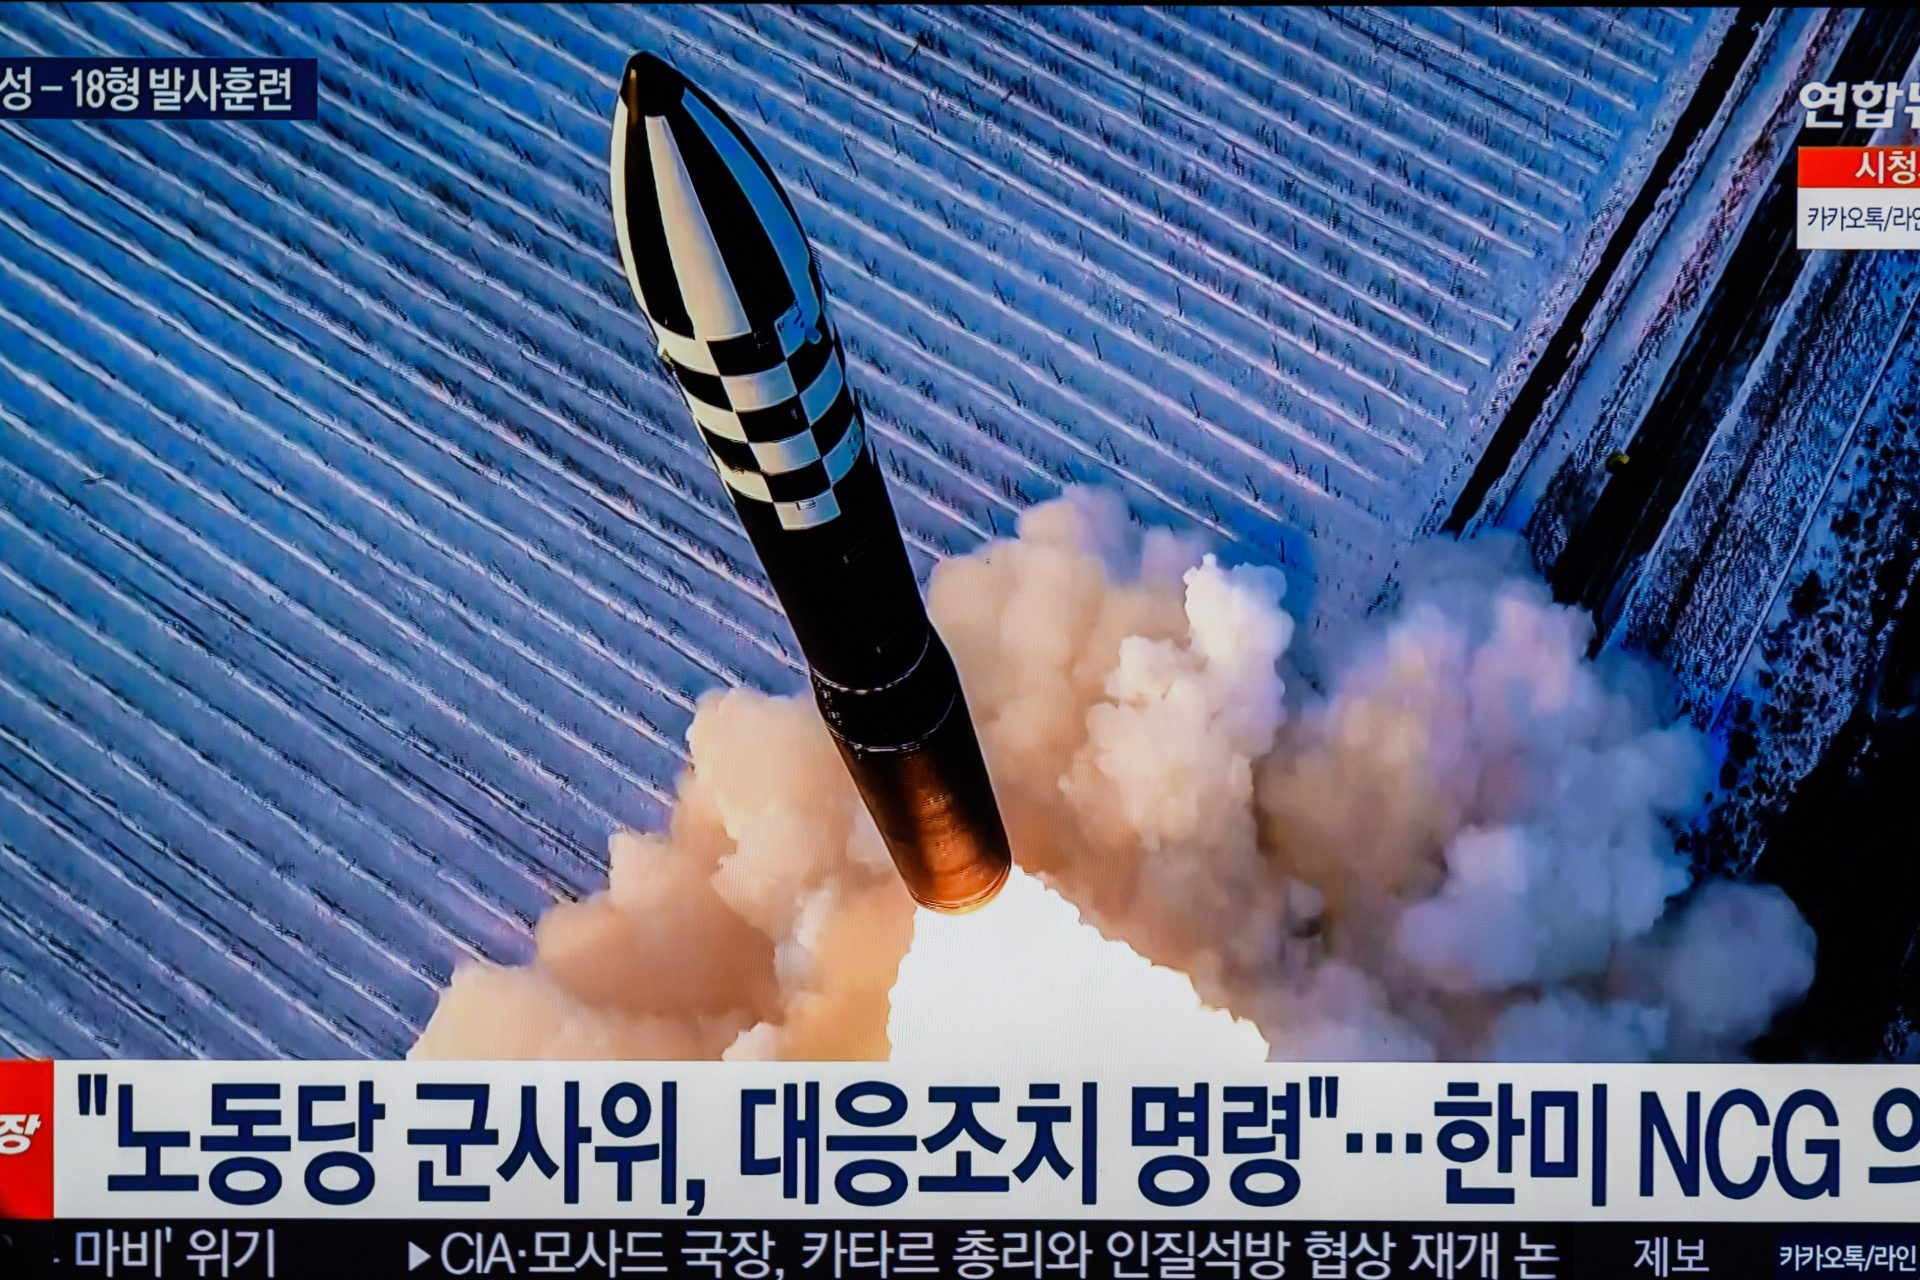 Laut Bericht enthalten die Raketen aus Pjöngjang viel westliche Technik